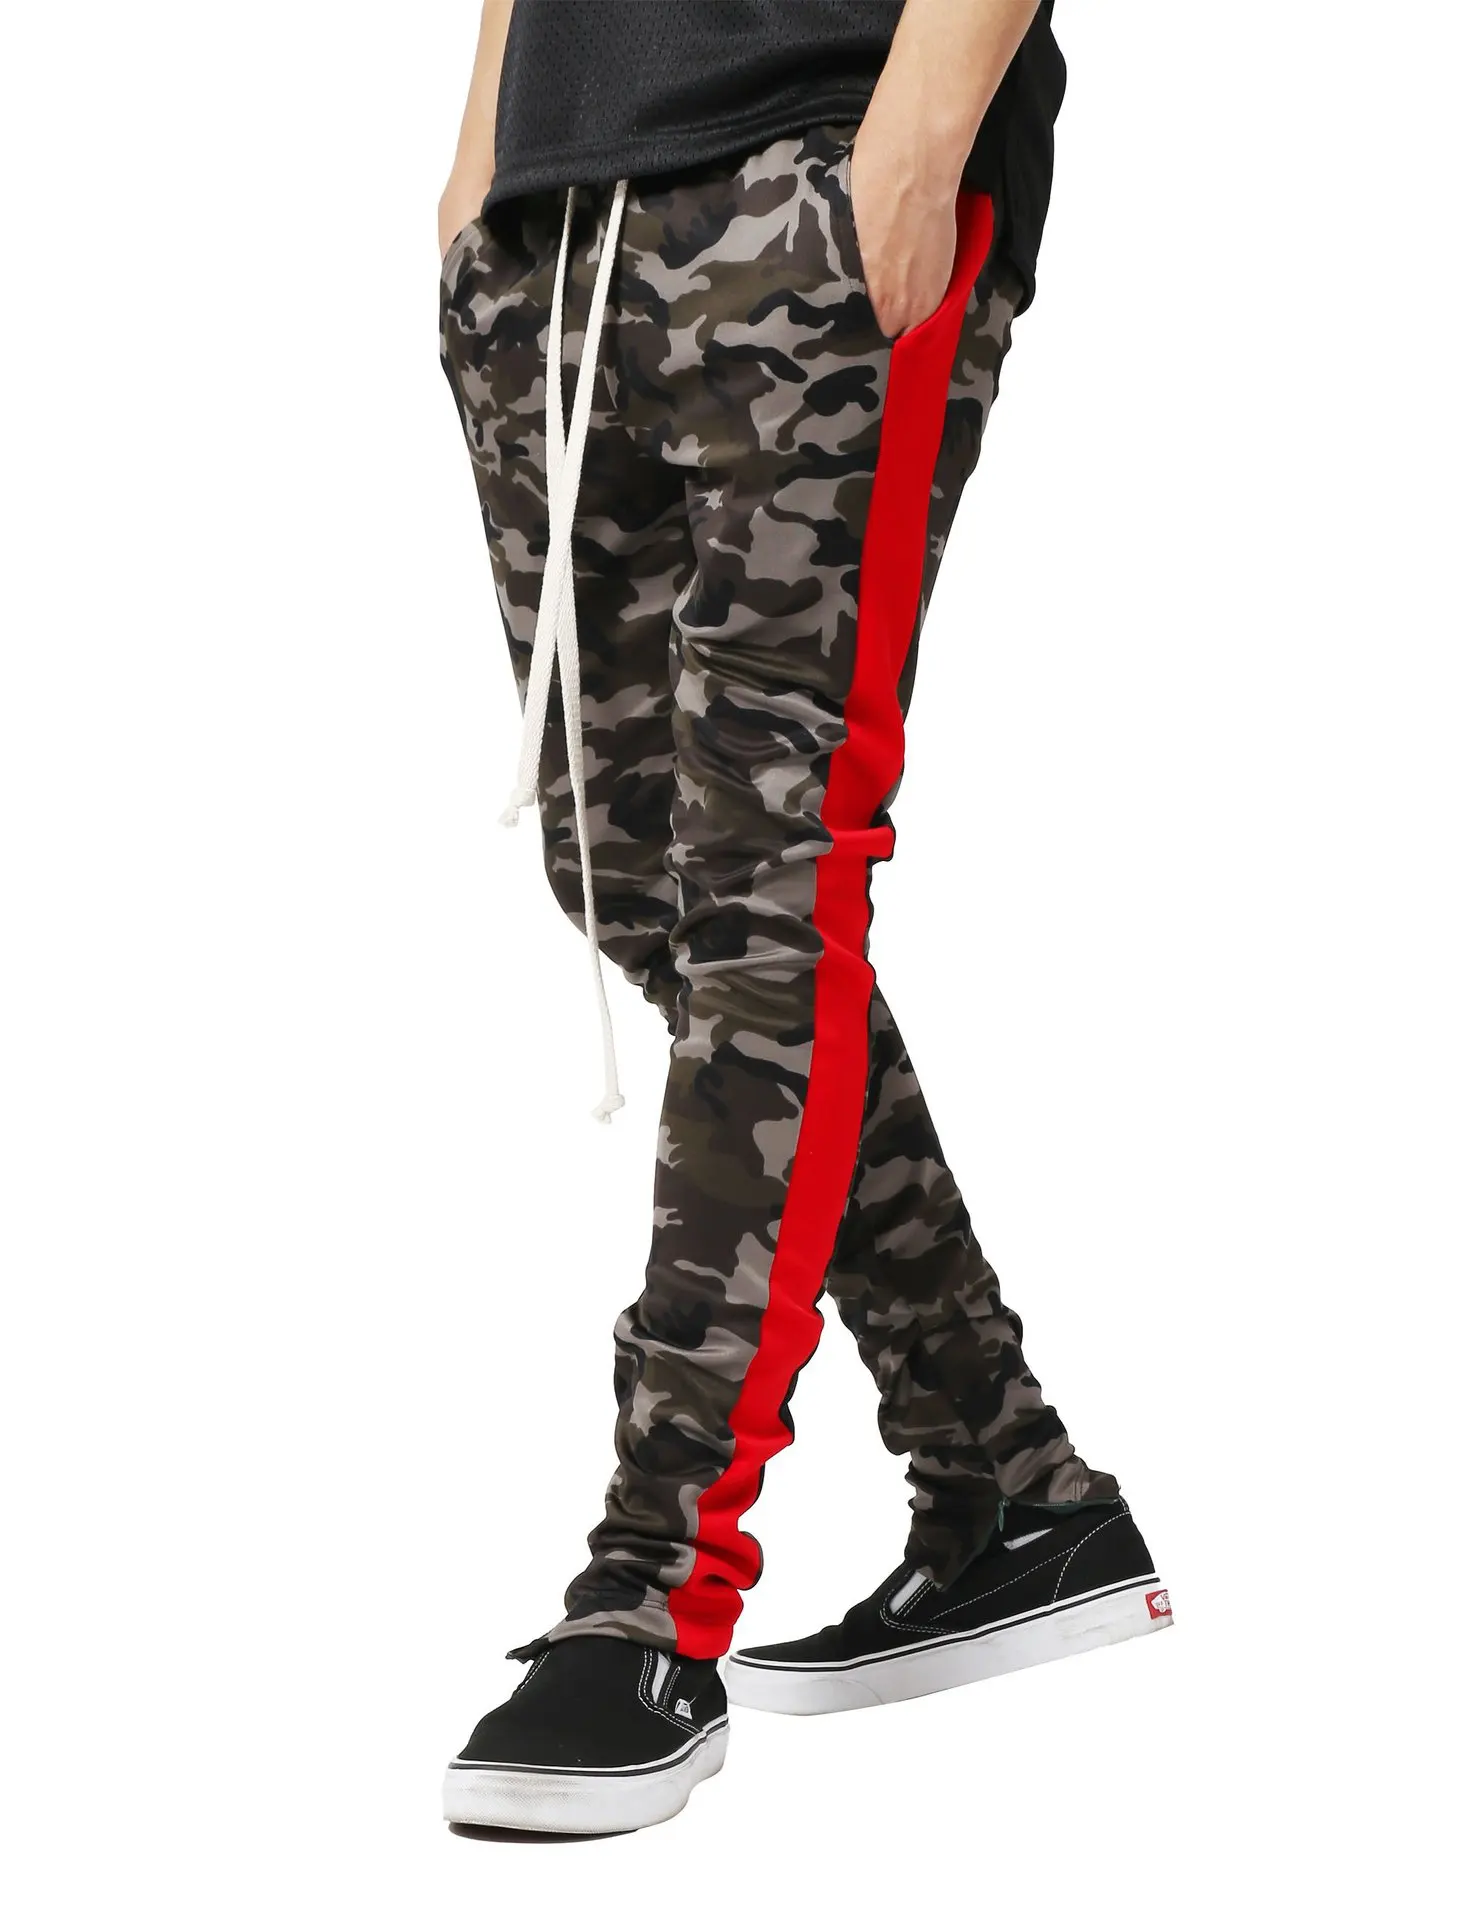 Laamei осенние Брендовые мужские Модные Военные Брюки карго с несколькими карманами, мешковатые мужские брюки, повседневные брюки, комбинезоны, камуфляжные штаны